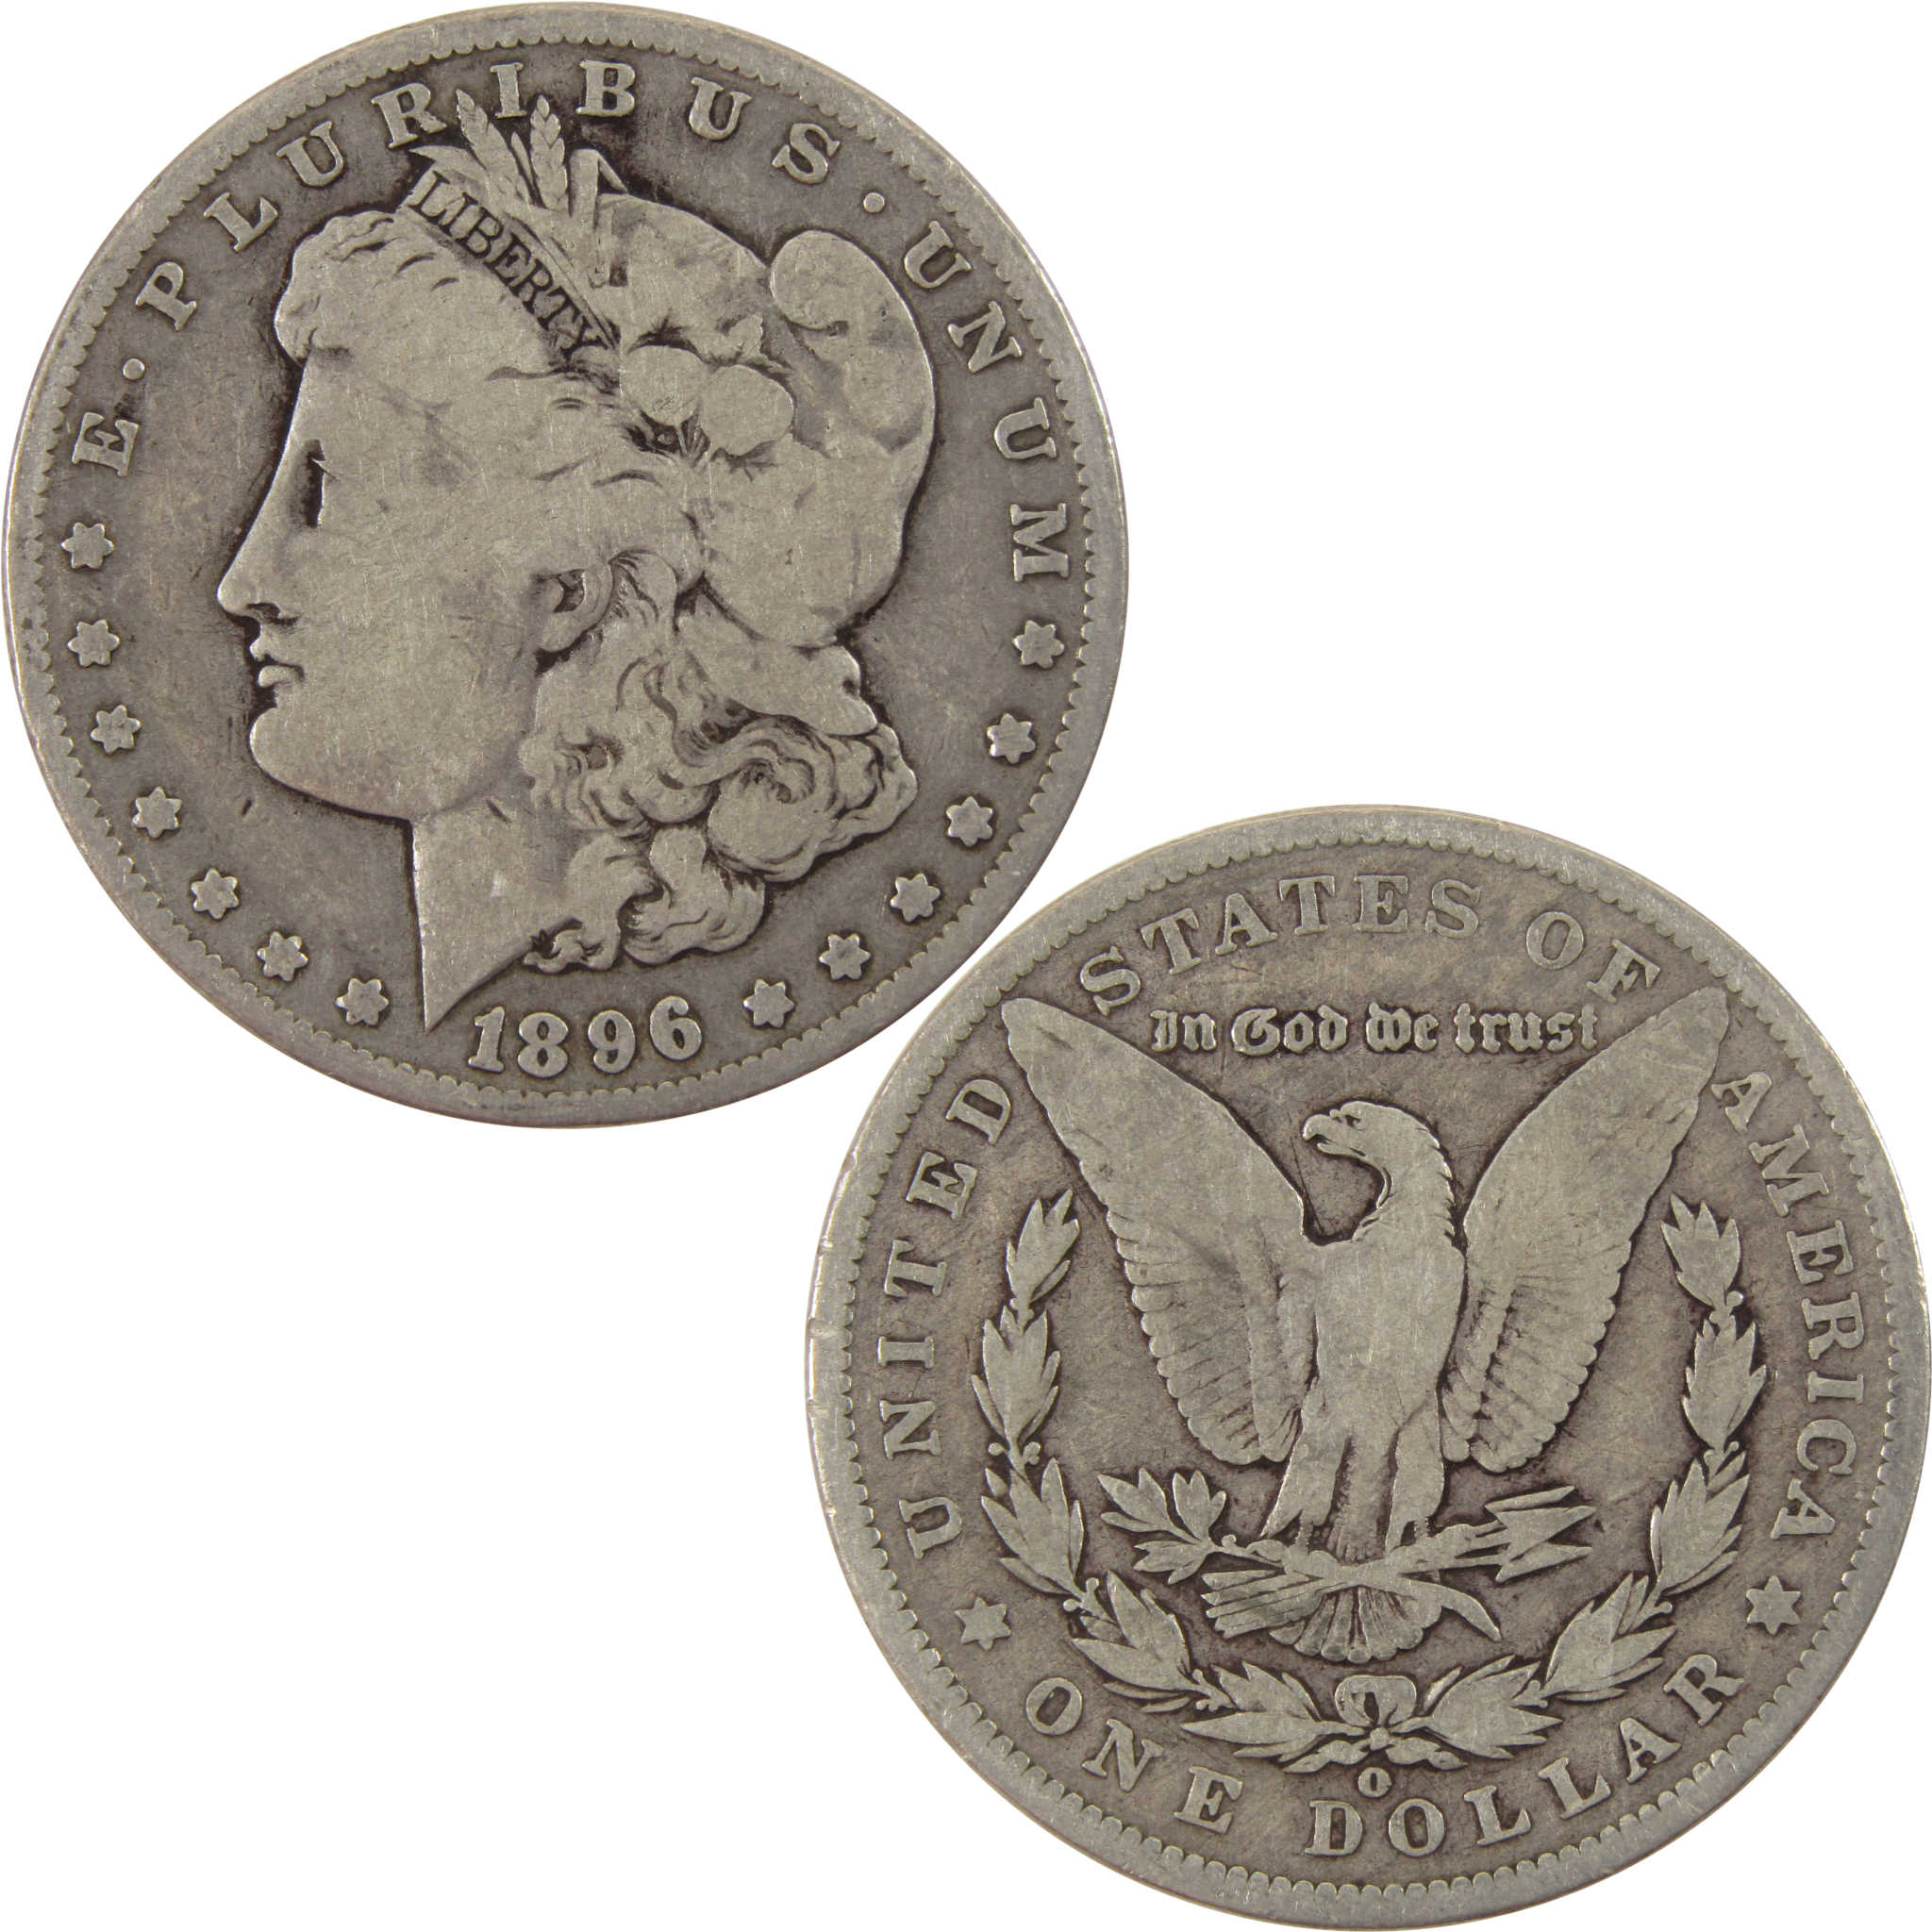 1896 O Morgan Dollar VG Very Good 90% Silver $1 Coin SKU:I8006 - Morgan coin - Morgan silver dollar - Morgan silver dollar for sale - Profile Coins &amp; Collectibles